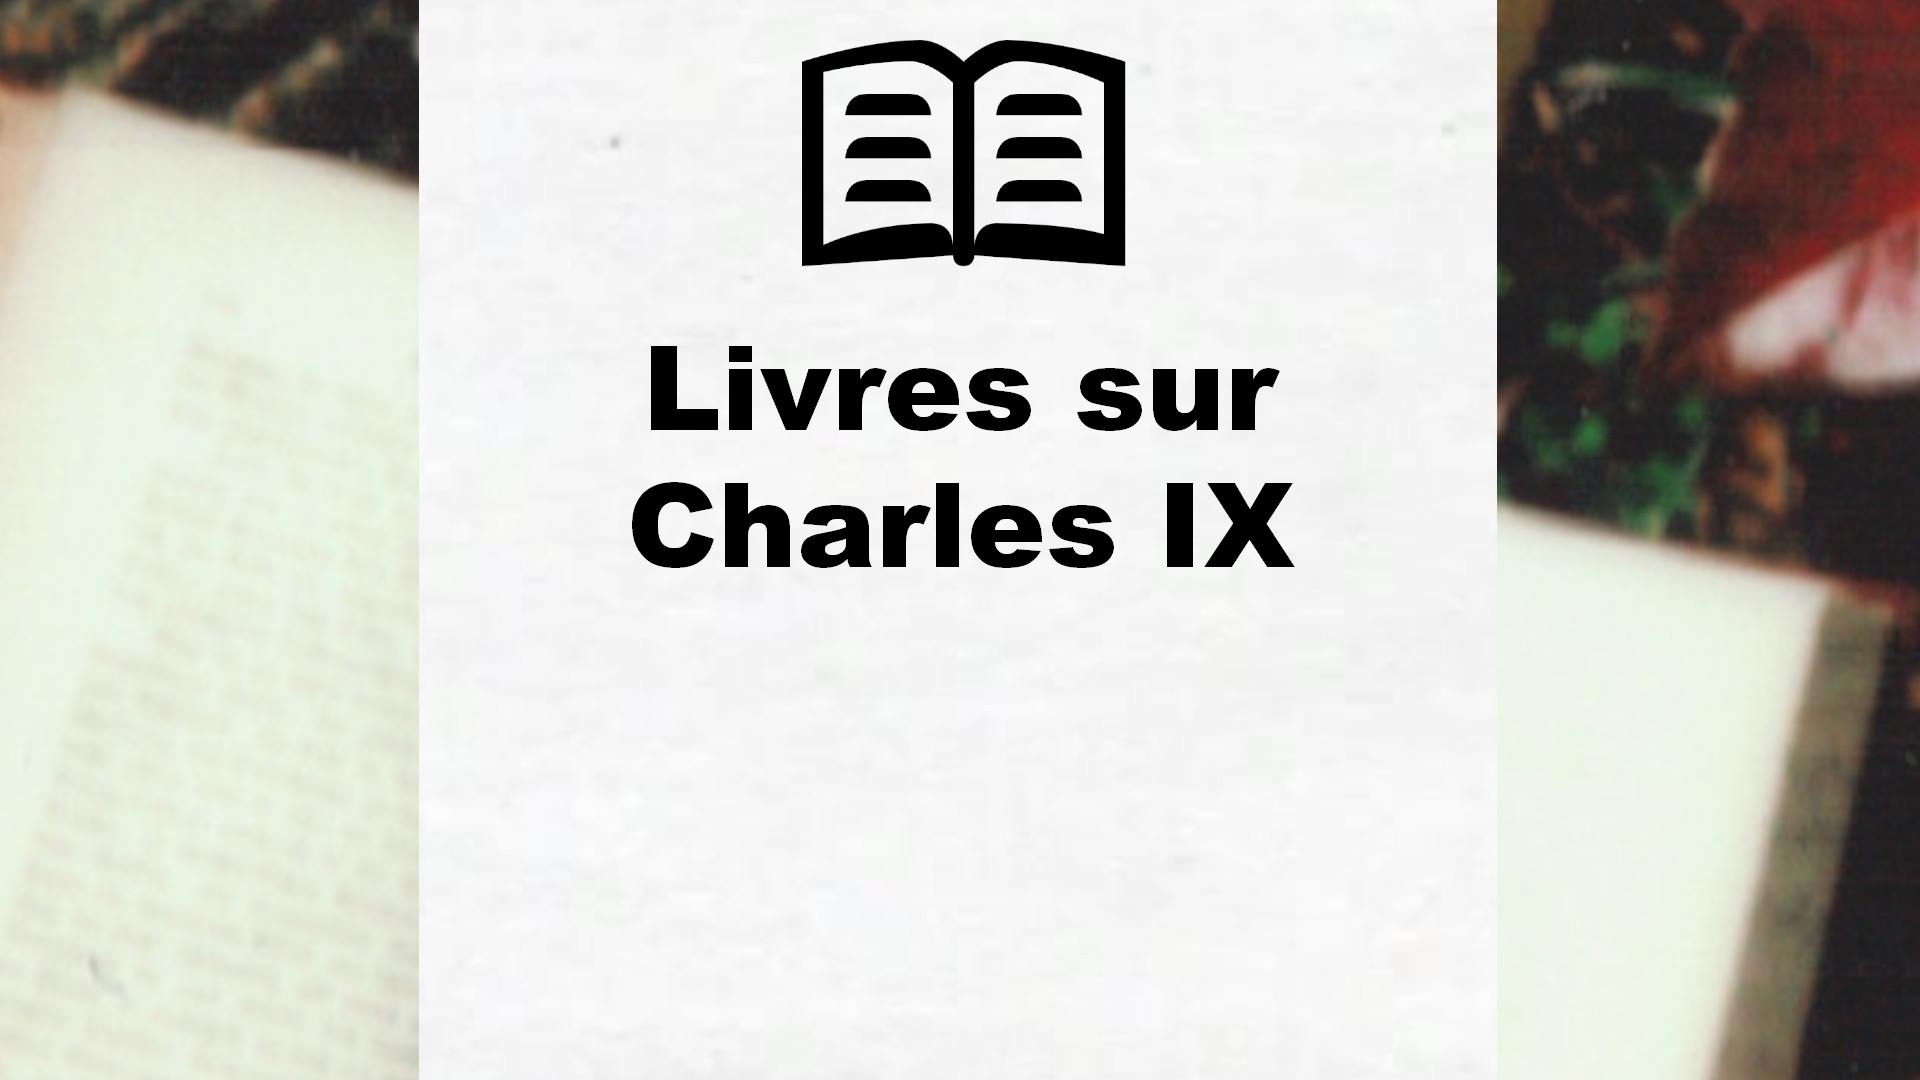 Livres sur Charles IX